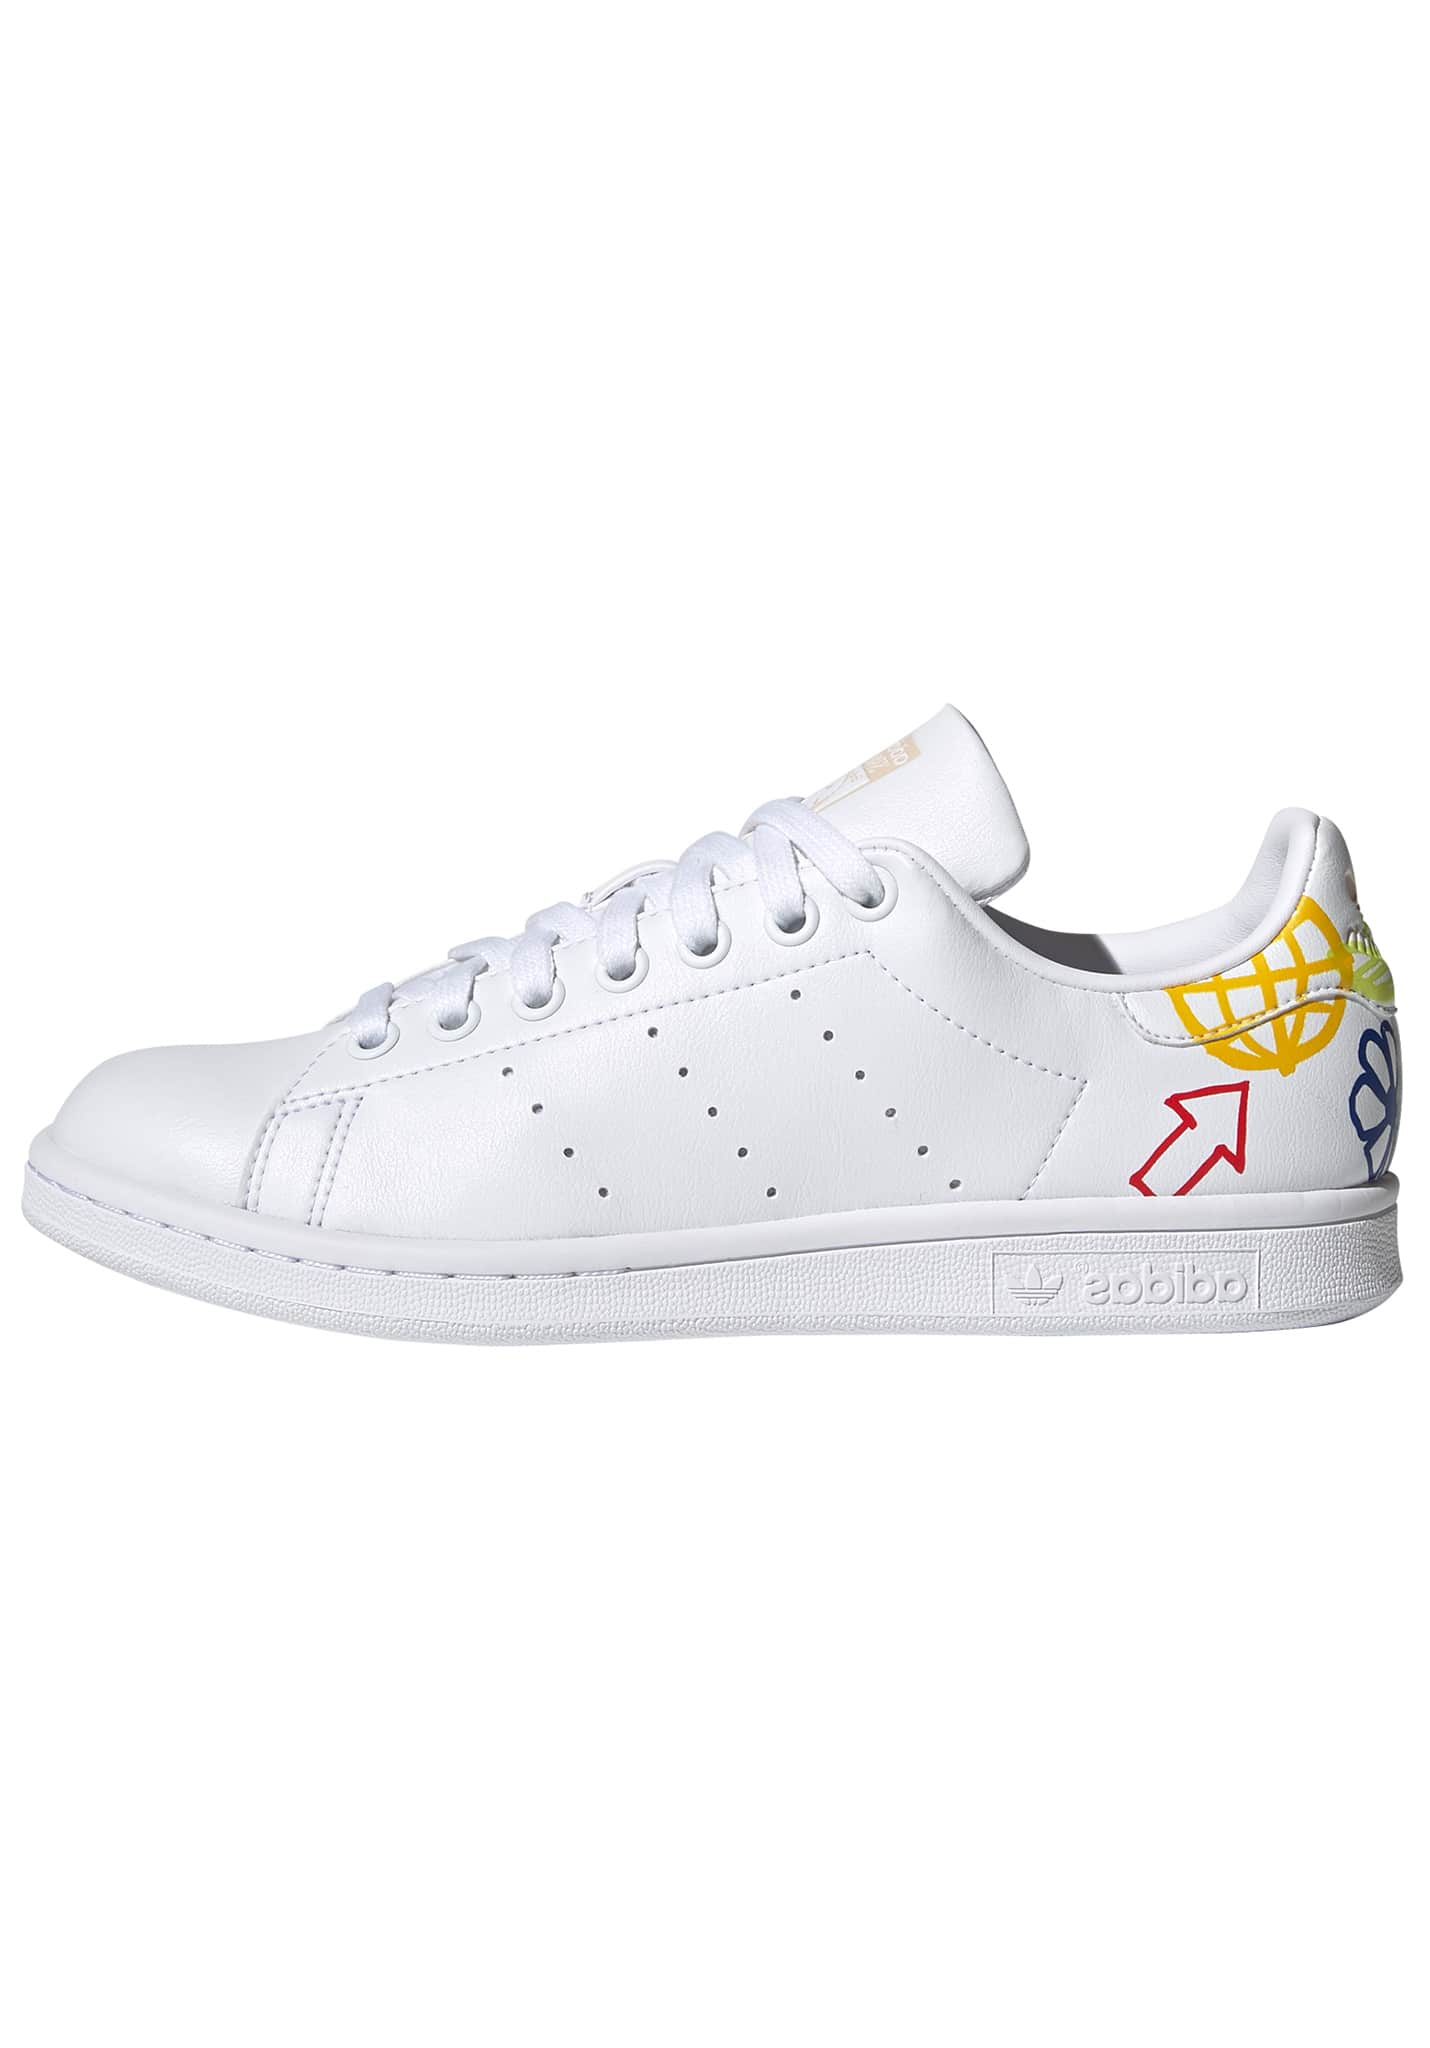 Adidas Originals Stan Smith Sneaker Low schuhwerk weiß/halivo/schuhwerk weiß 40